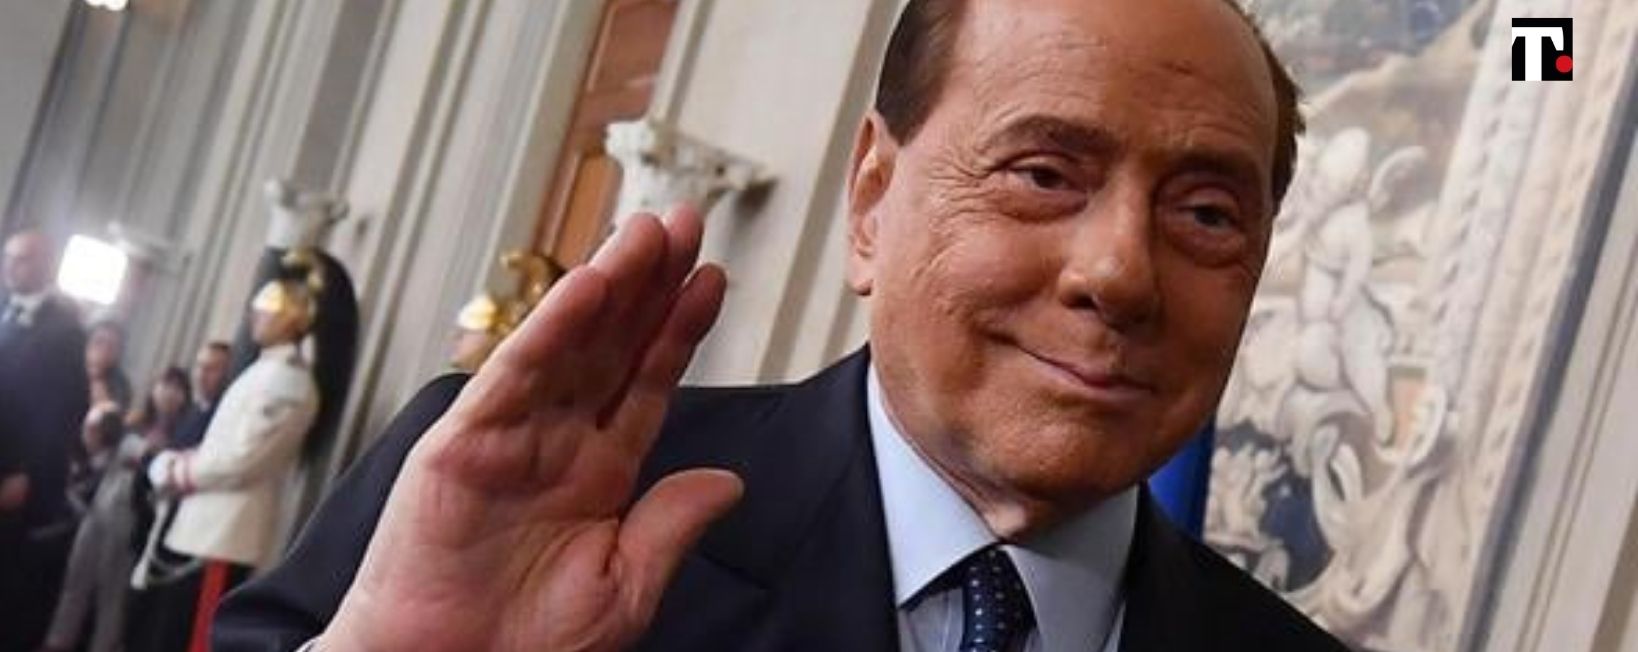 Come sta Berlusconi